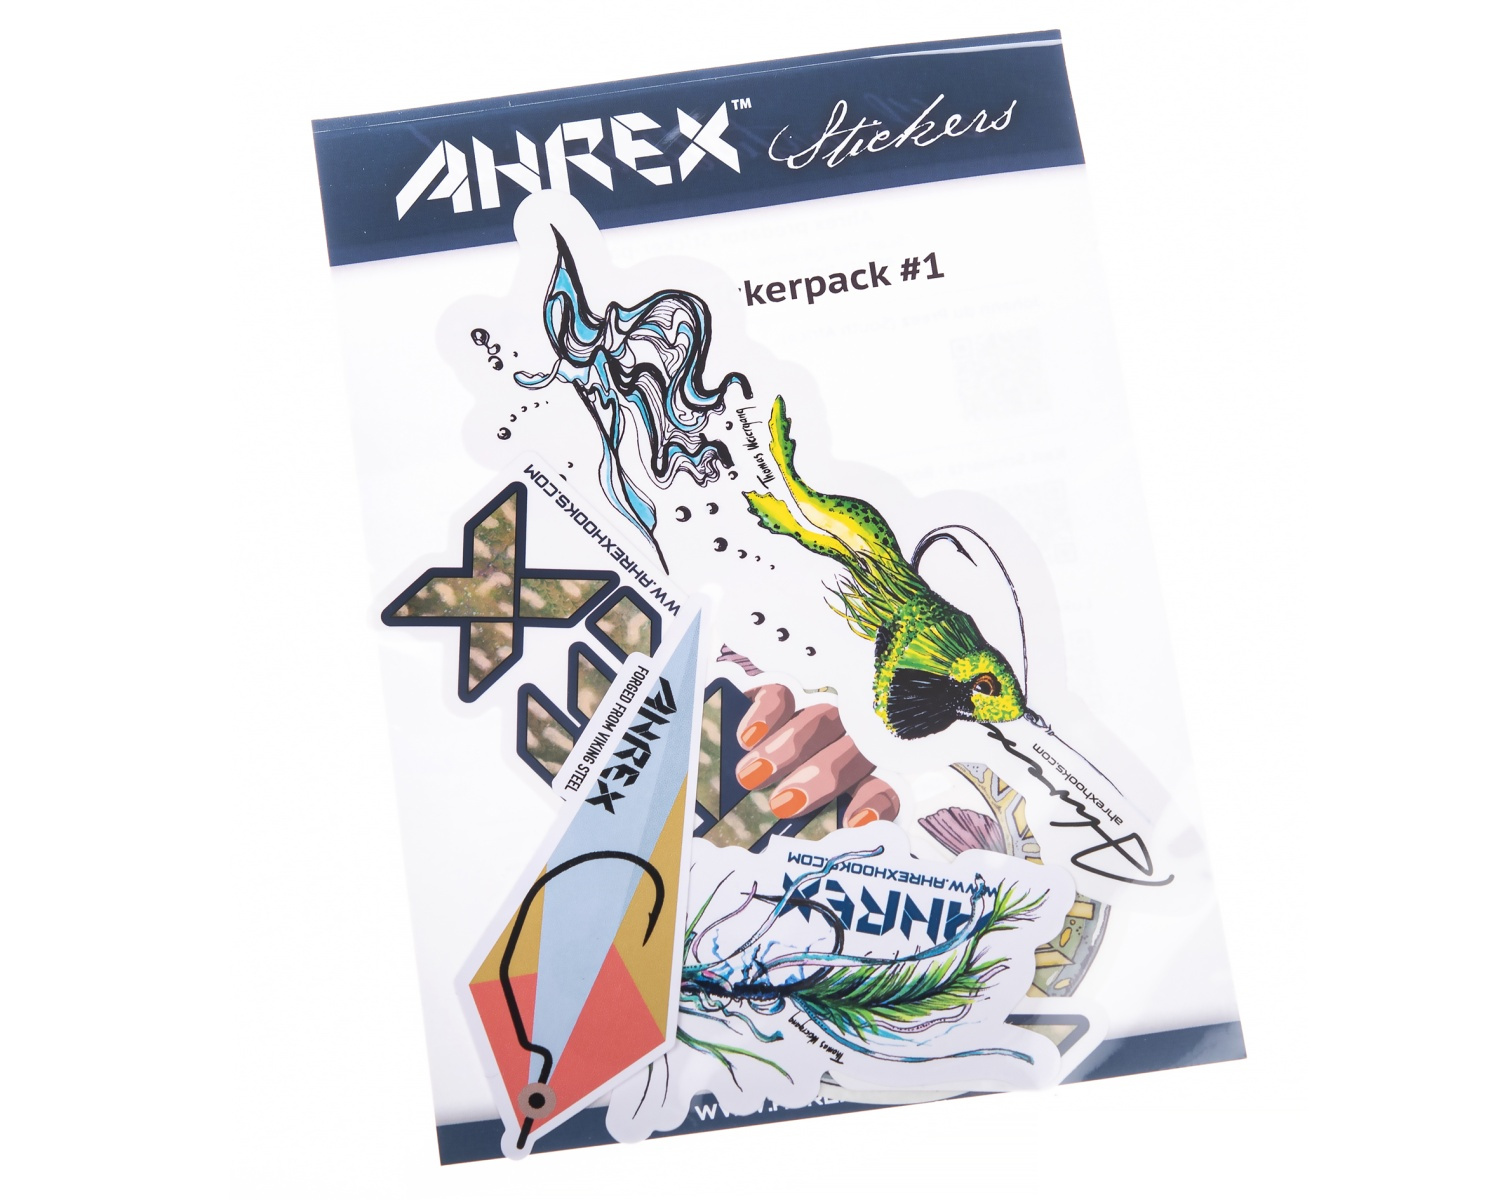 Ahrex Predator Sticker Pack #1